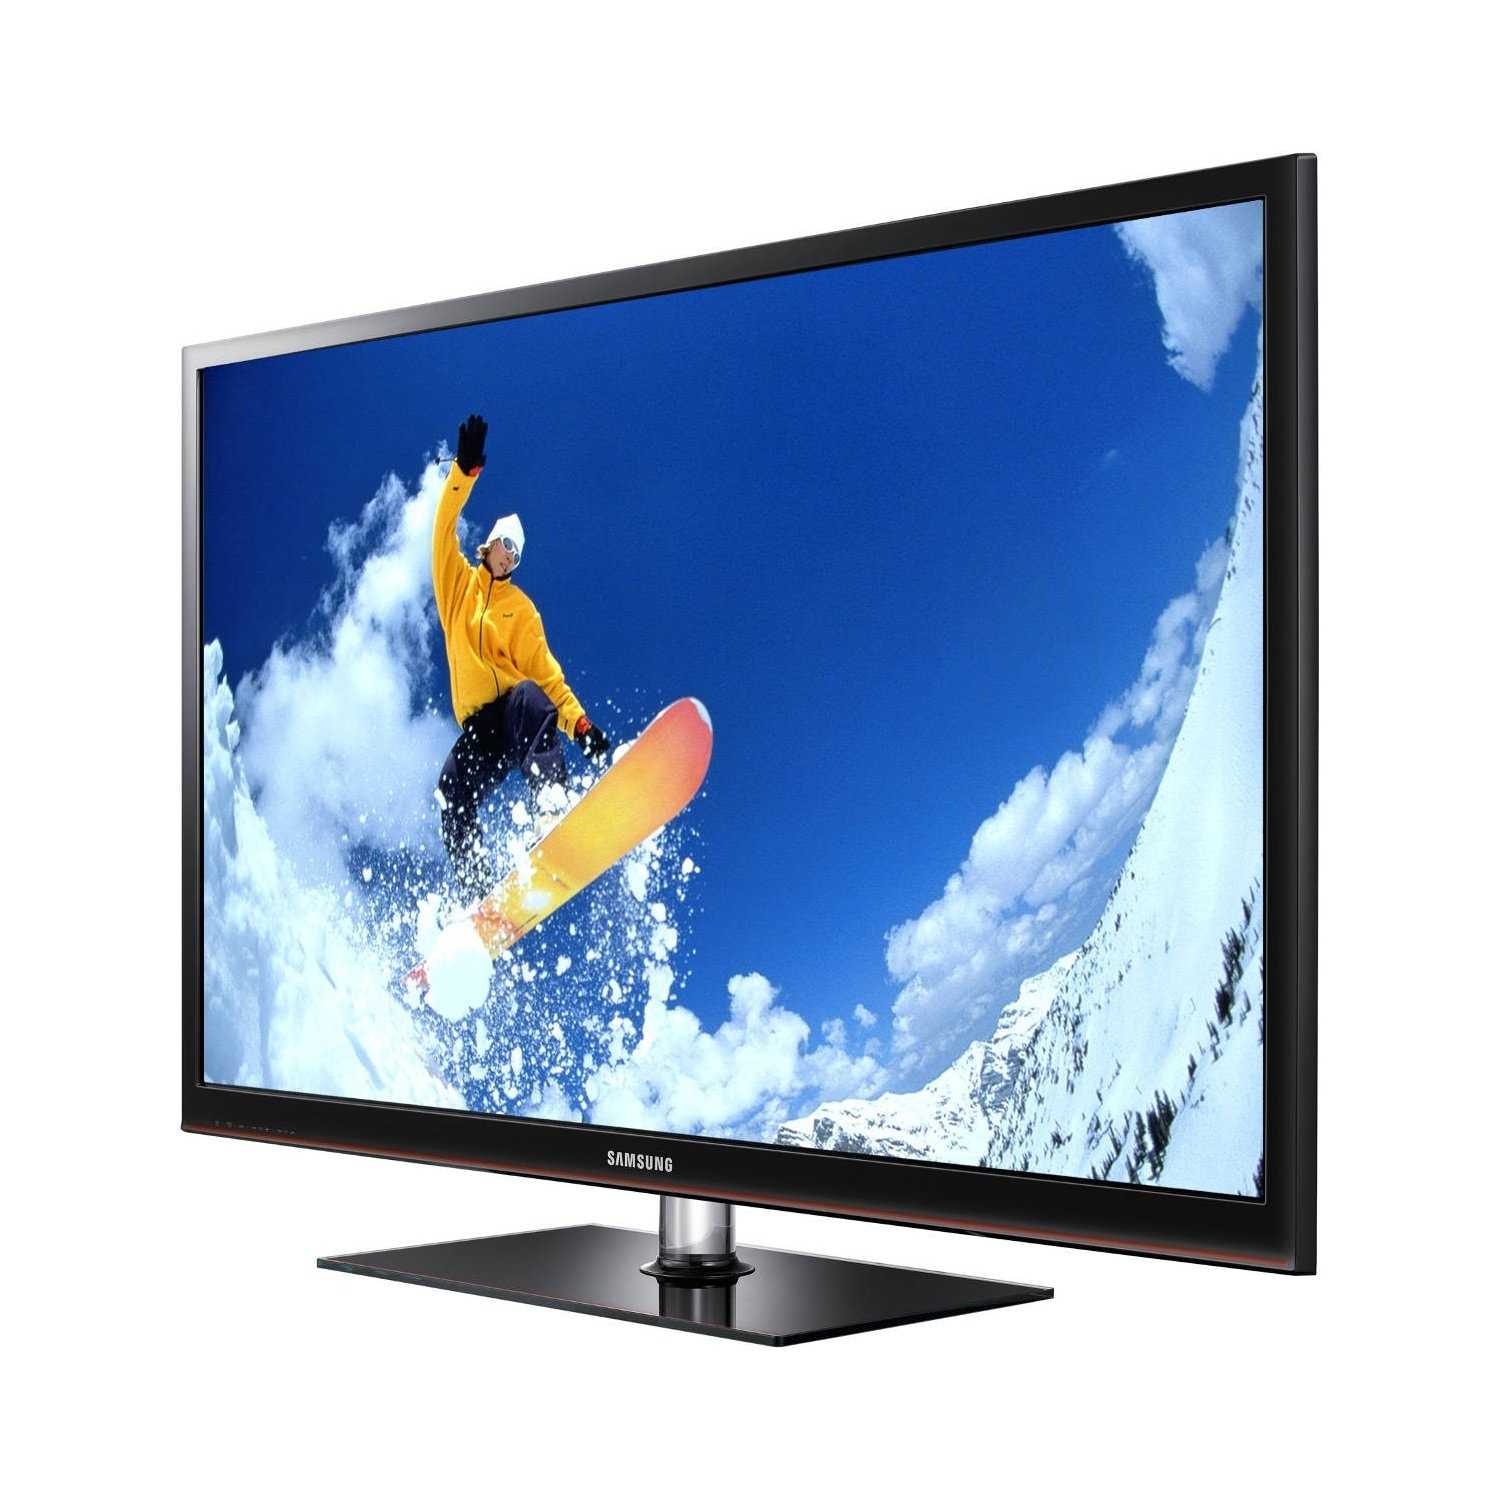 Samsung ps51f5500ak - купить , скидки, цена, отзывы, обзор, характеристики - телевизоры